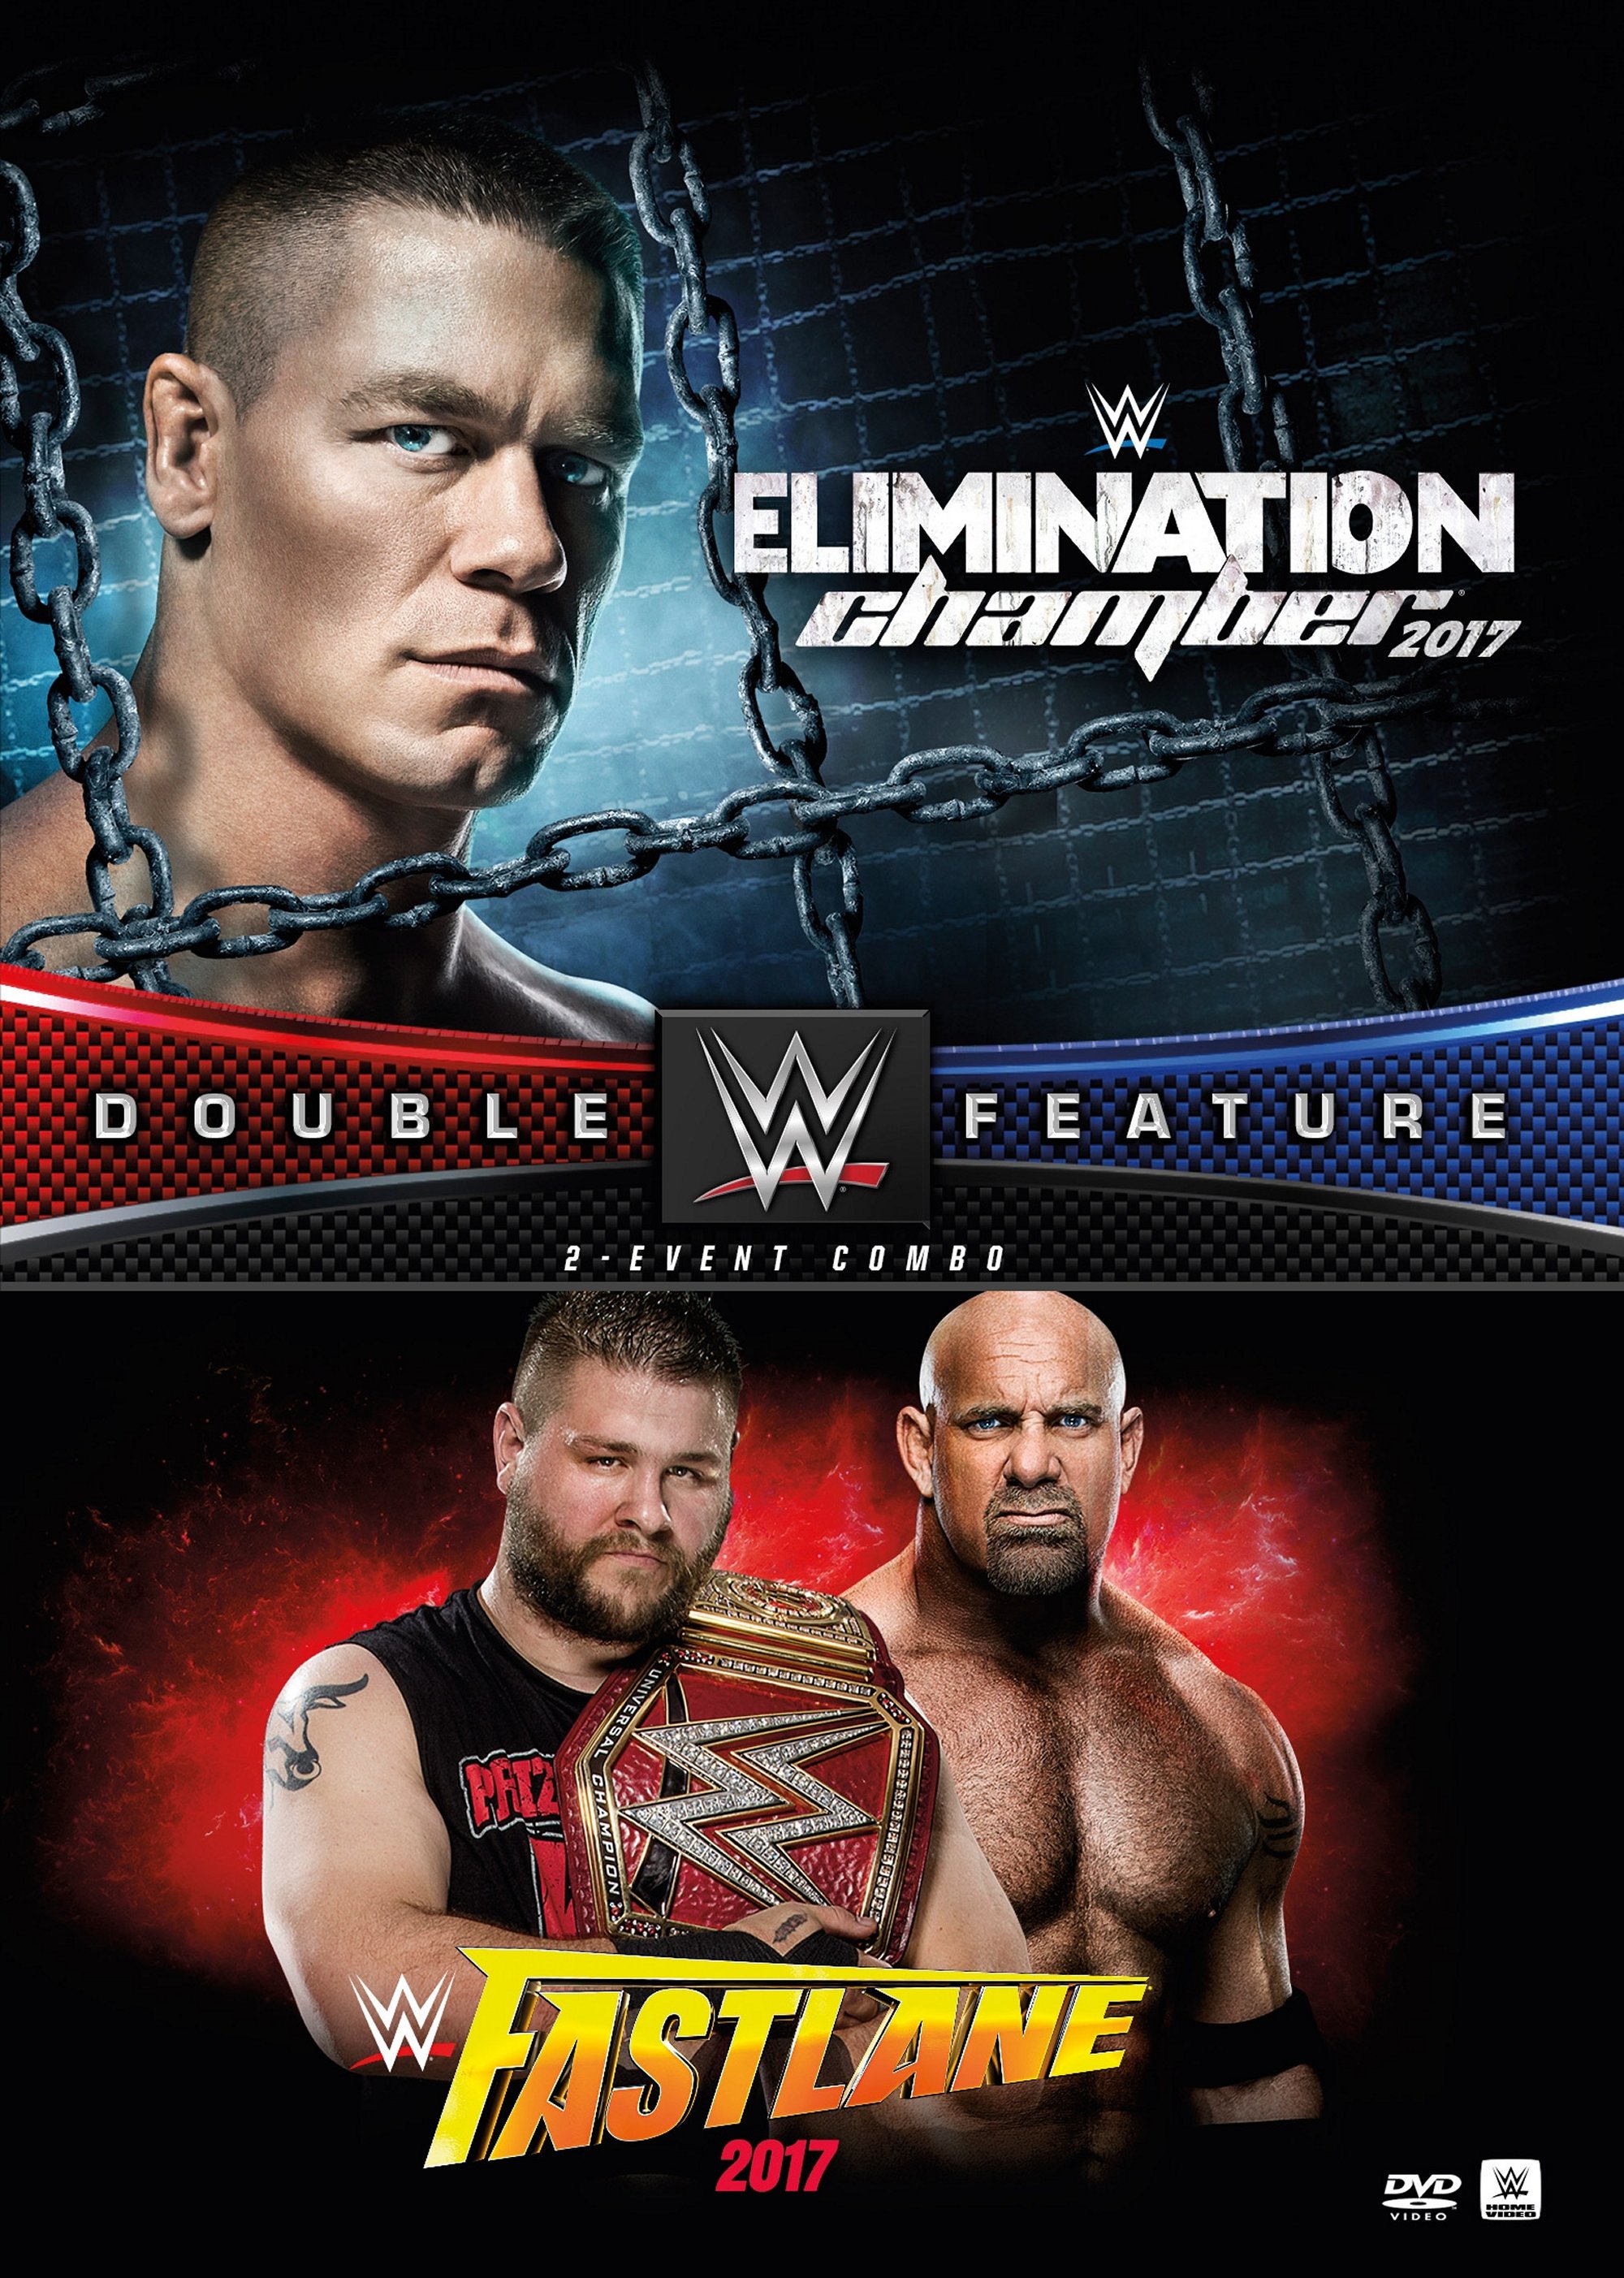 WWE Elimination Chamber/Fastlane 2017 [DVD] Best Buy